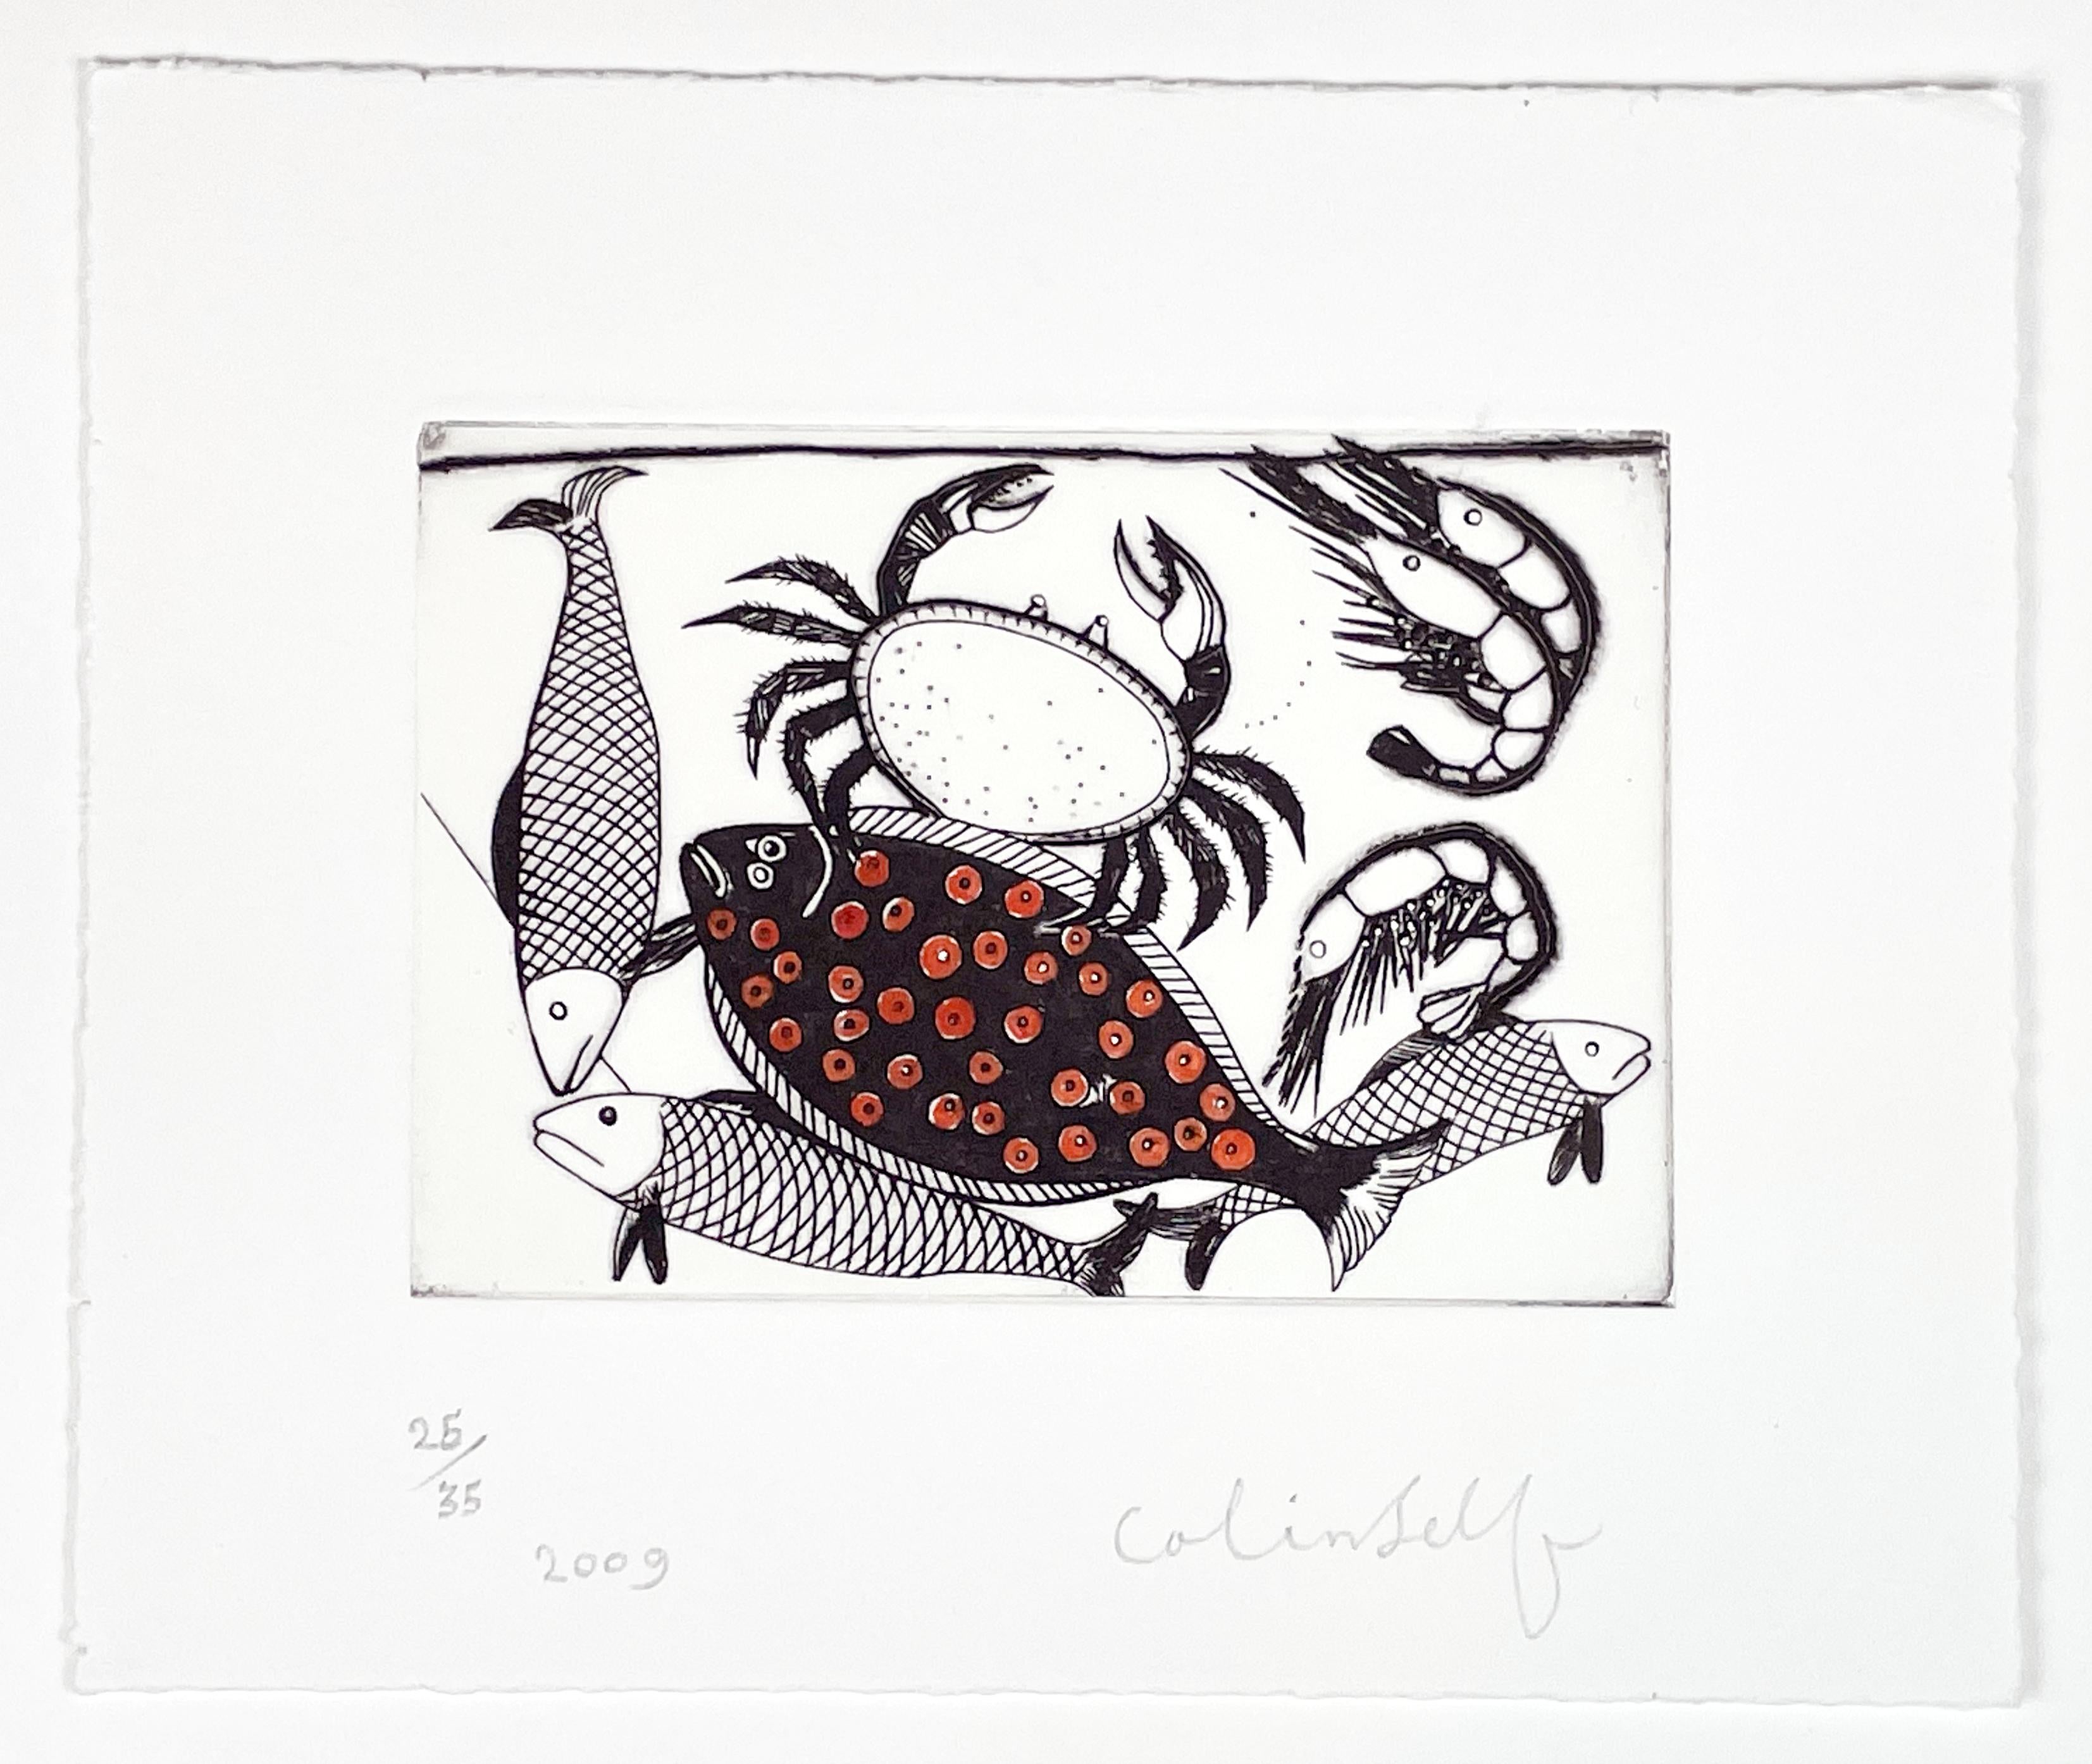 Le crabe, la glace et les chopes - Print de Colin Self